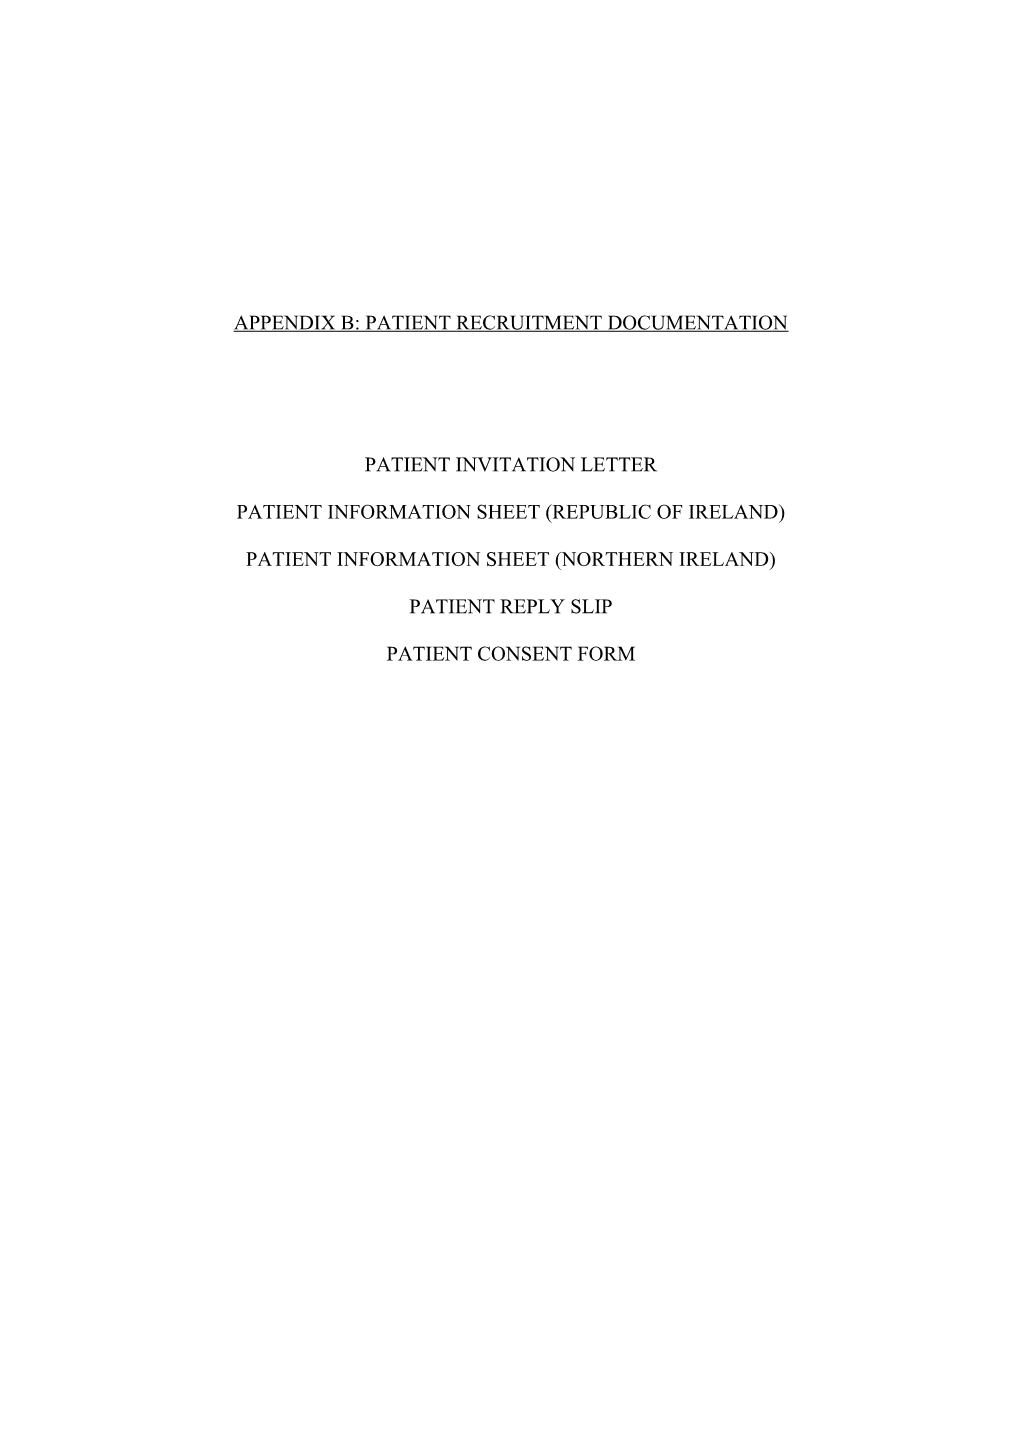 Appendix B: Patient Recruitment Documentation